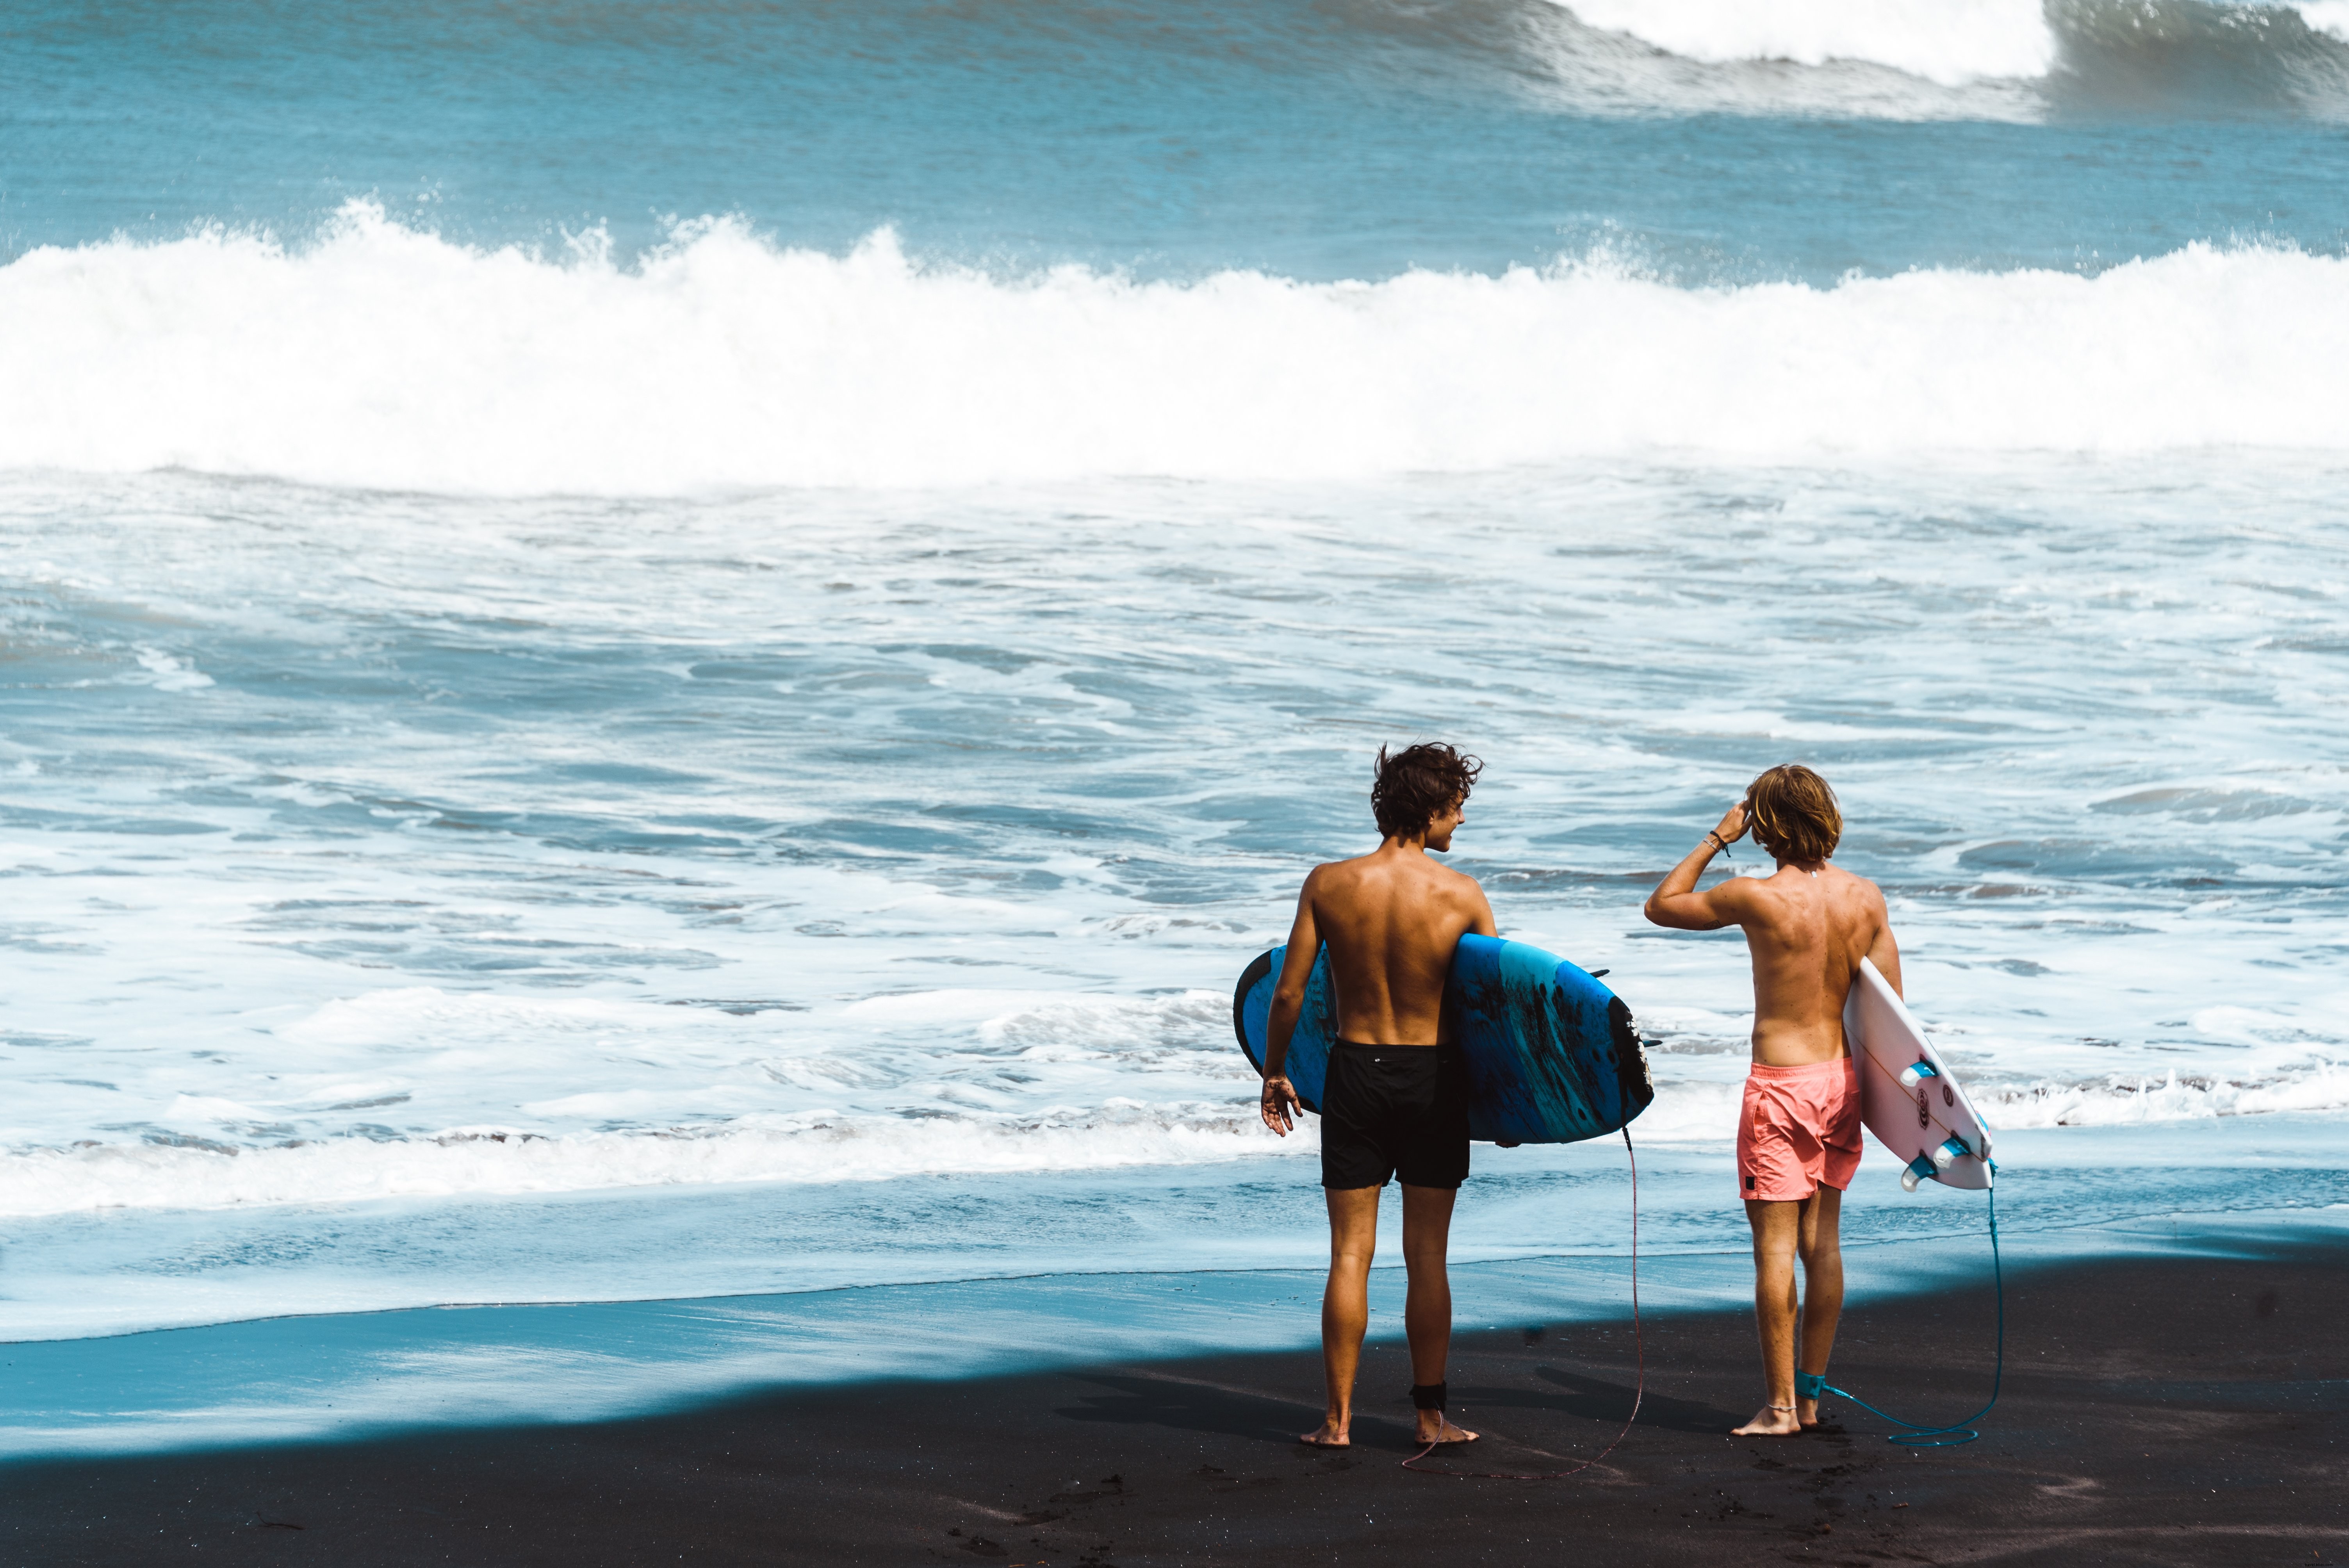 Los surfistas se paran en la foto de la orilla